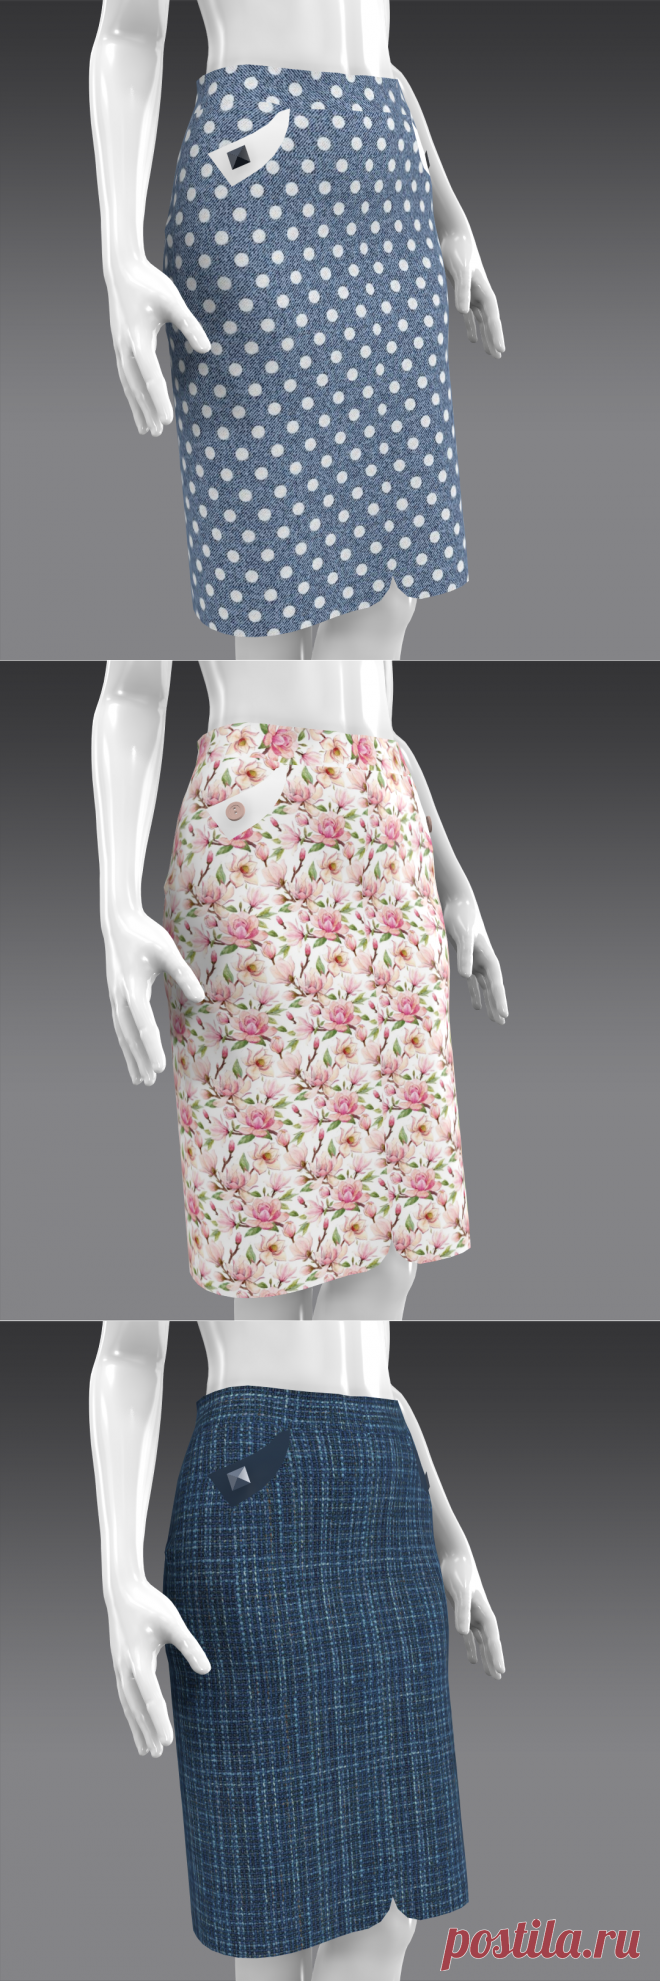 Прямая юбка с цельновыкроенным боковым швом - бесплатная выкройка и описание пошива | ✂ BuZA Style - бесплатные выкройки PDF | Яндекс Дзен